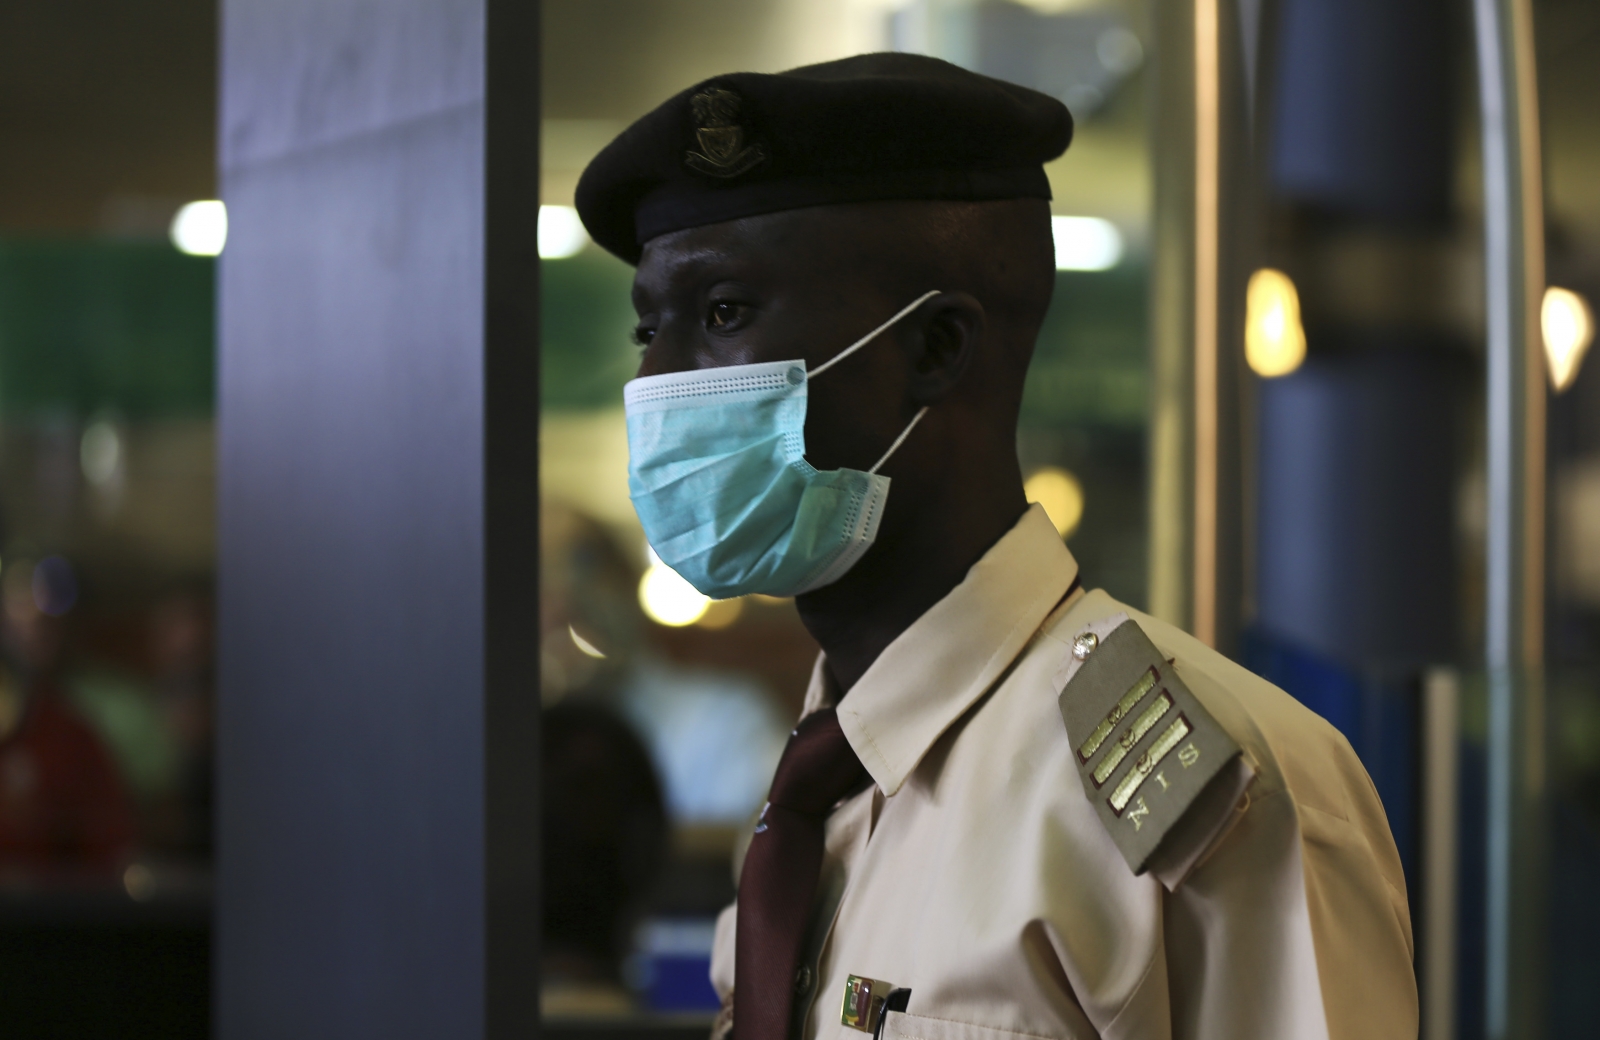 Ebola mask